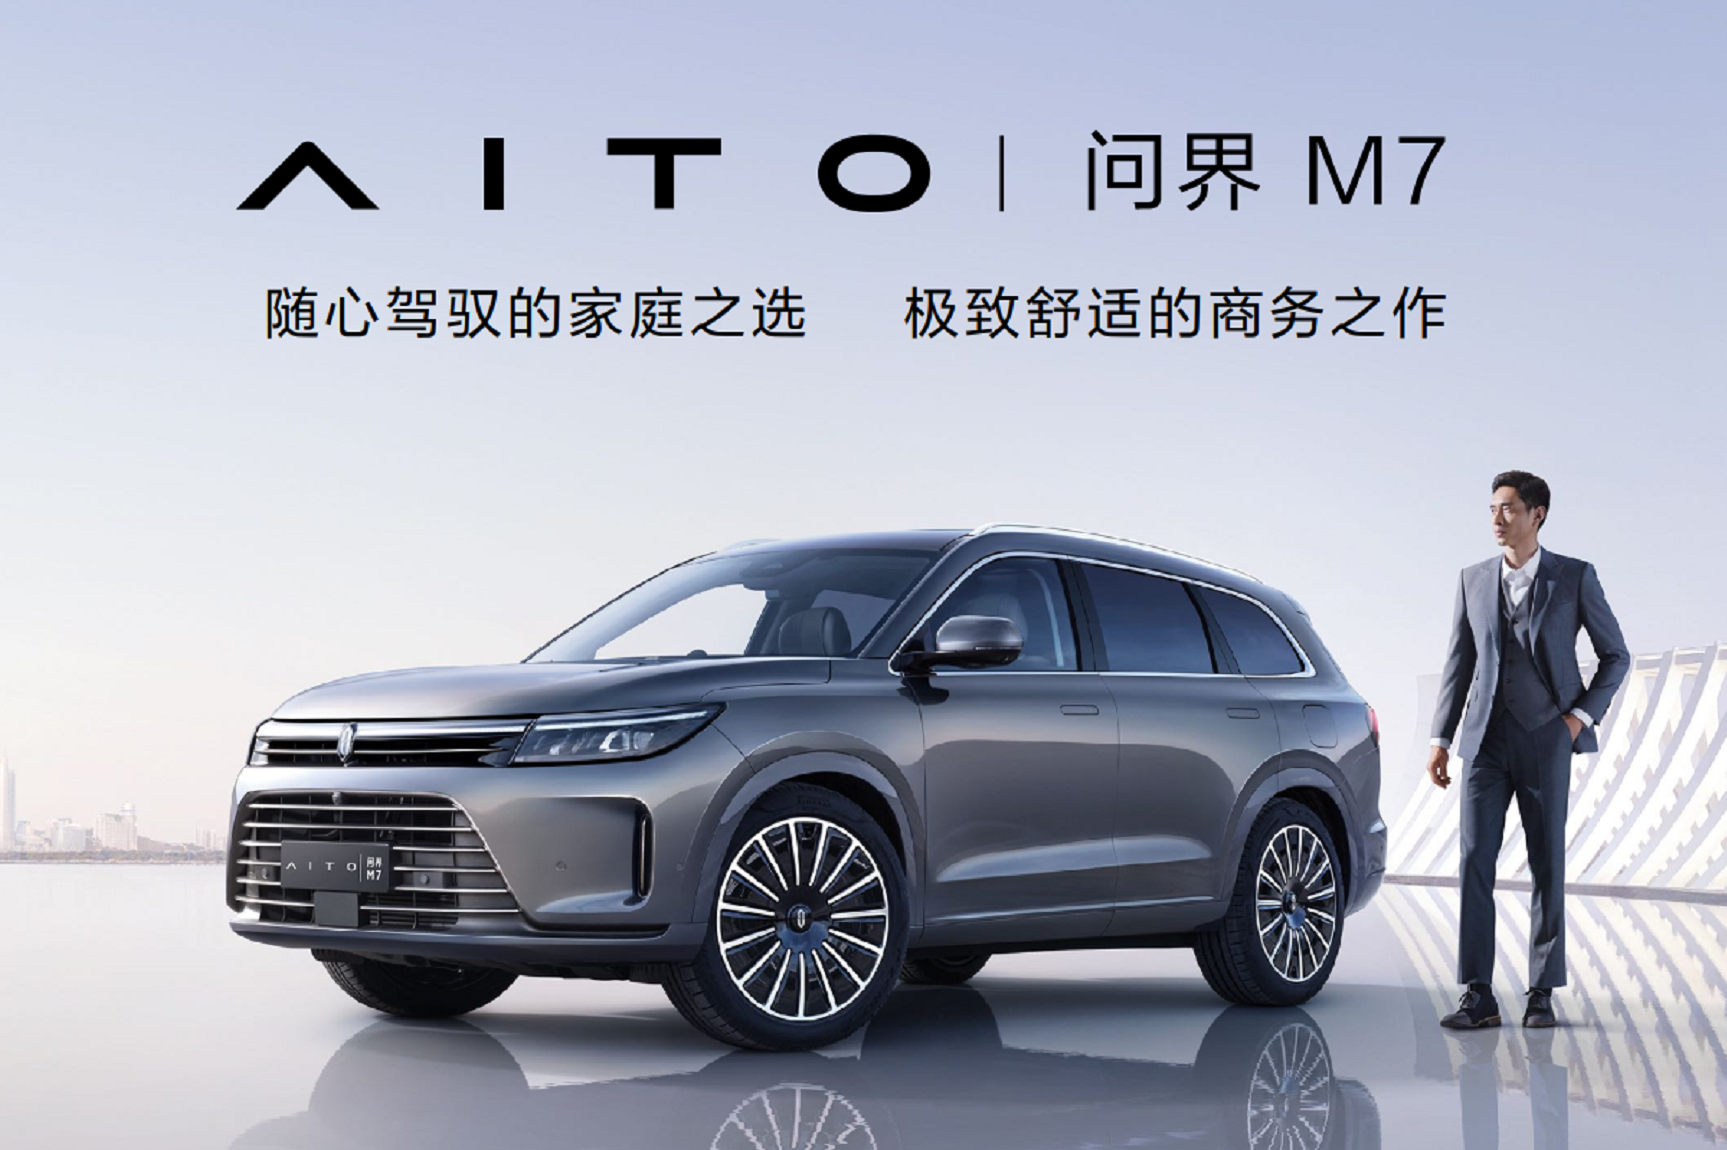 生于7月4日，AITO第二款车型问界M7，31.98-37.98万元上市